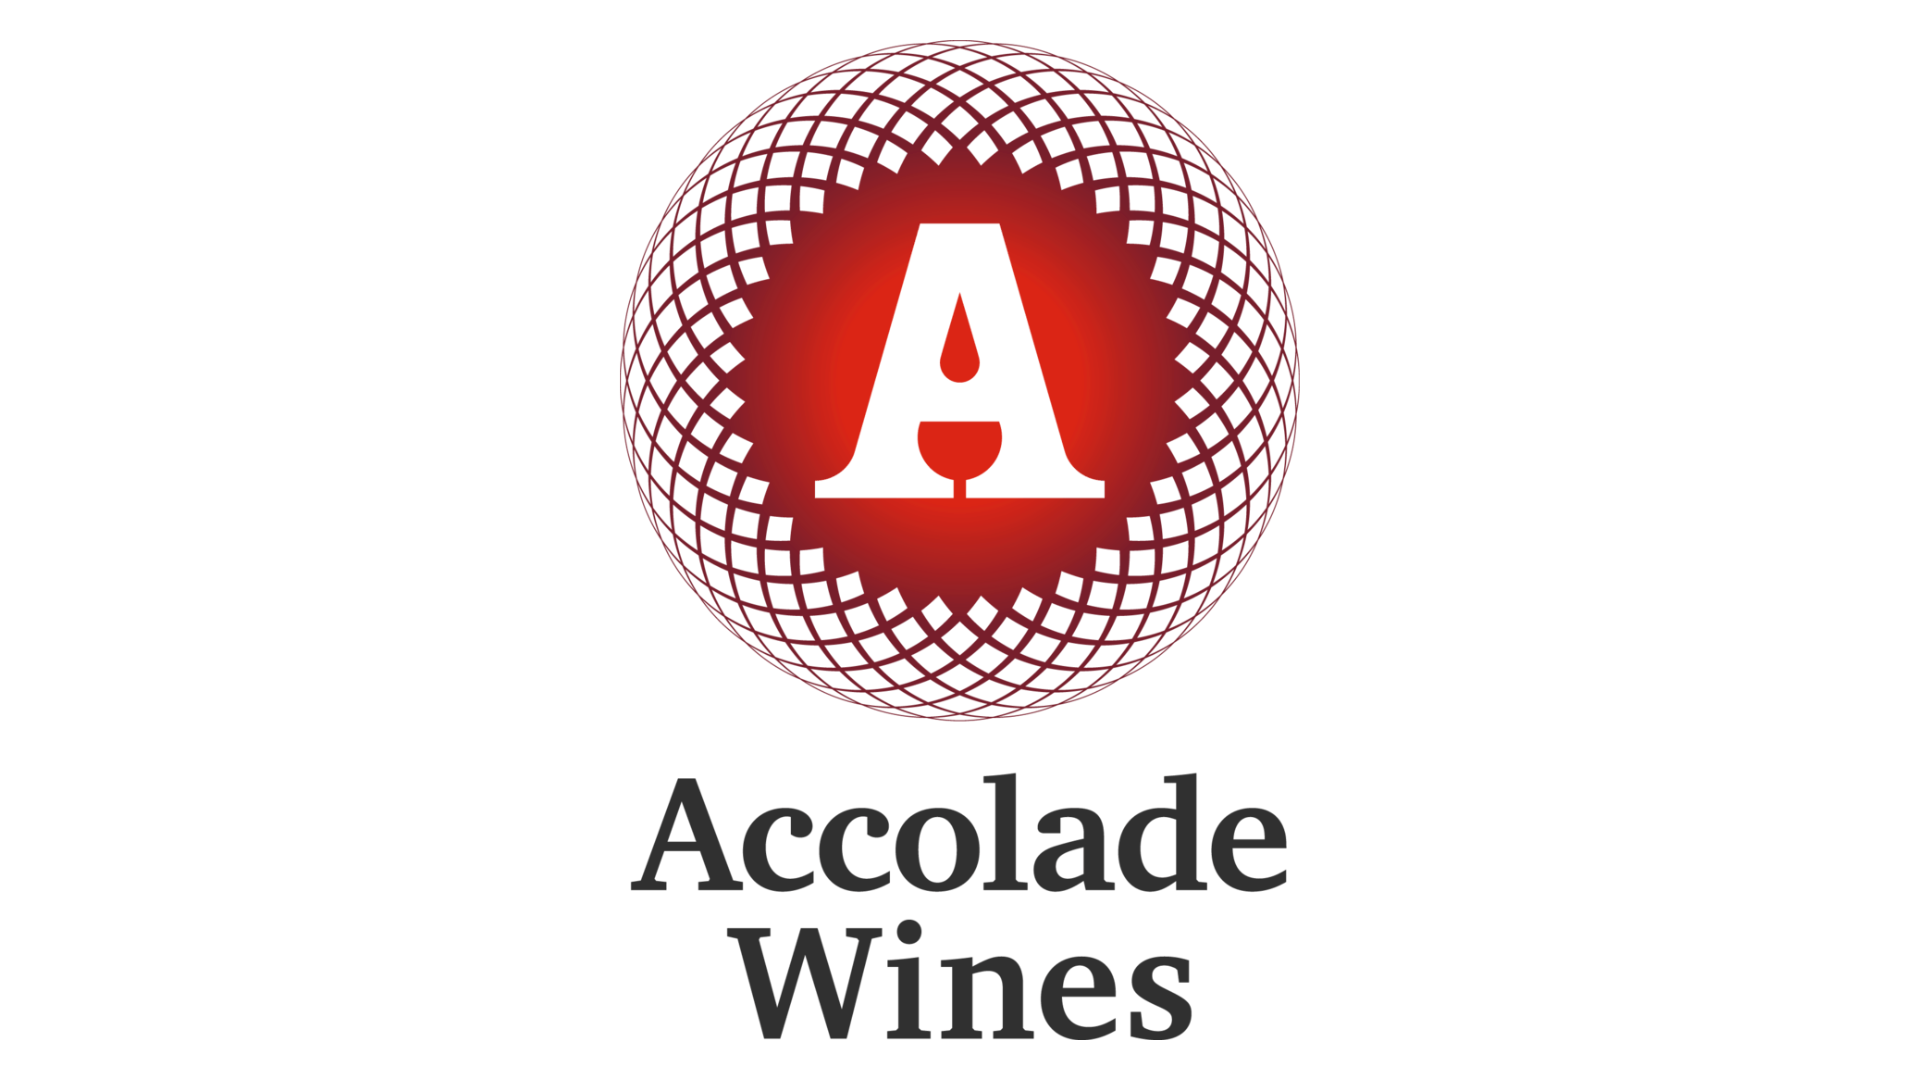 A logo for Accolade Wines showcasing venue details.